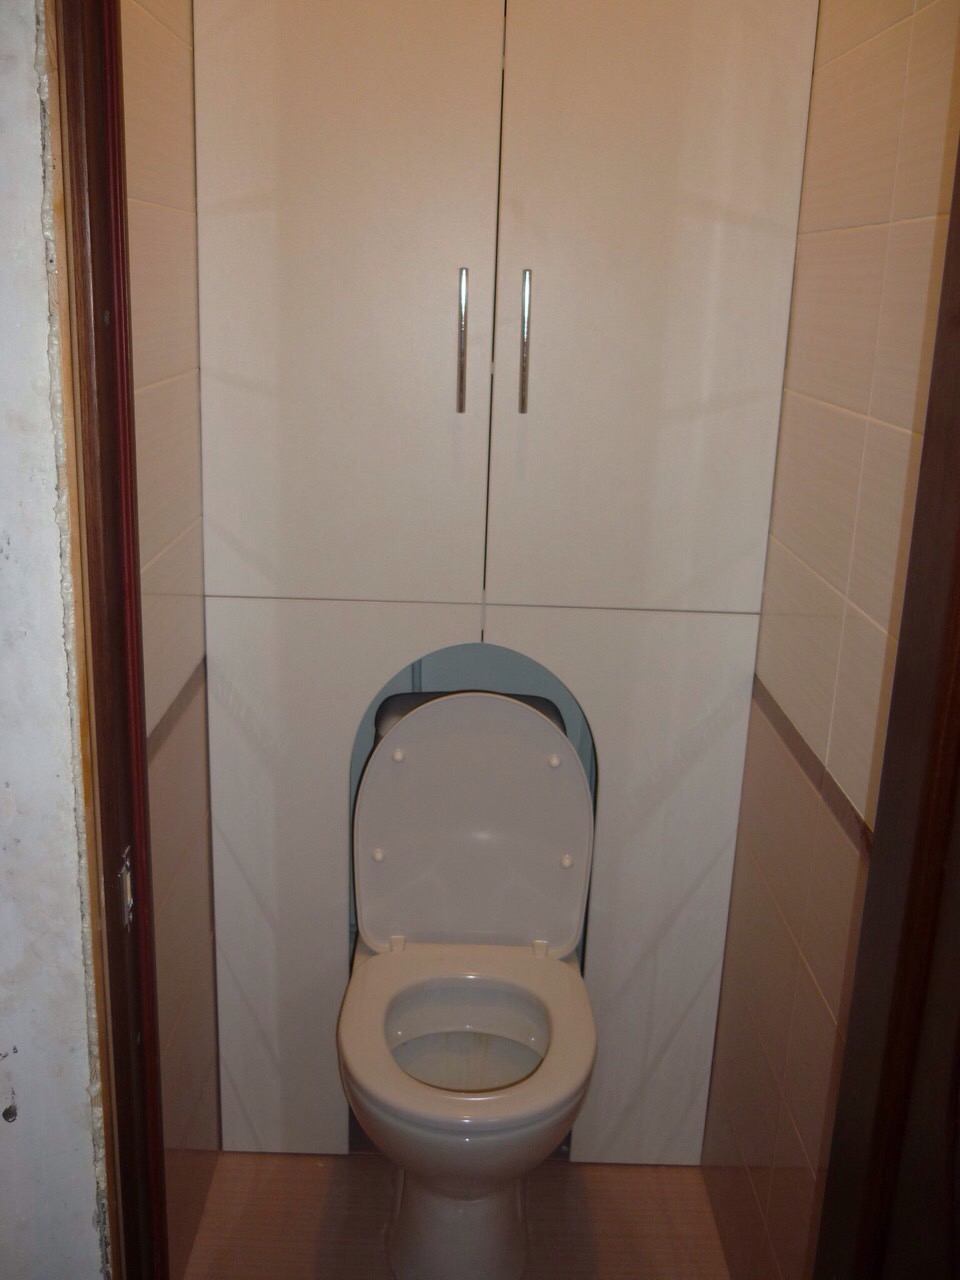 Встраиваемый шкаф в туалете за унитазом